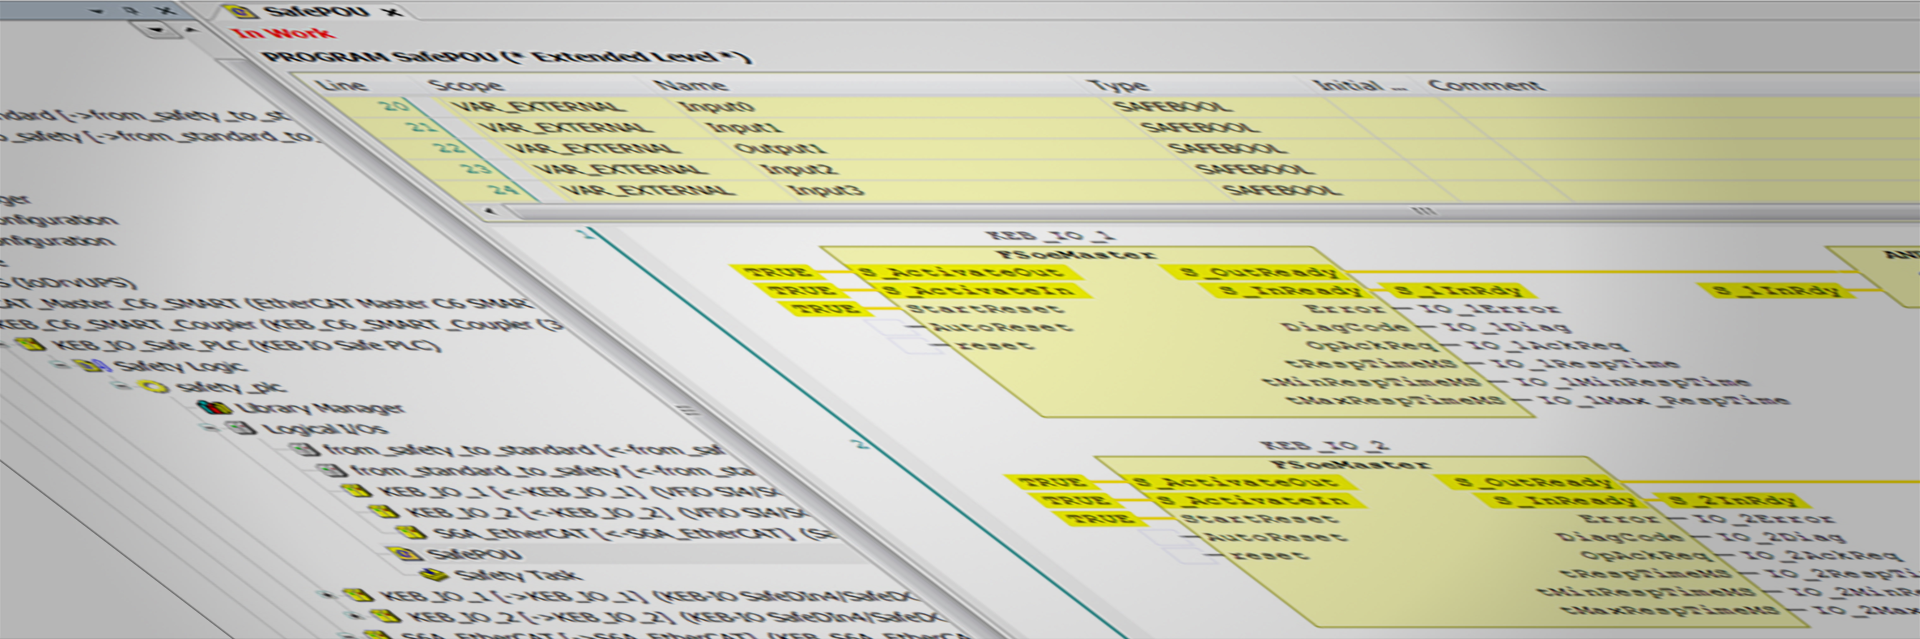 Screenshot des Software Tools COMBIVIS studio 6